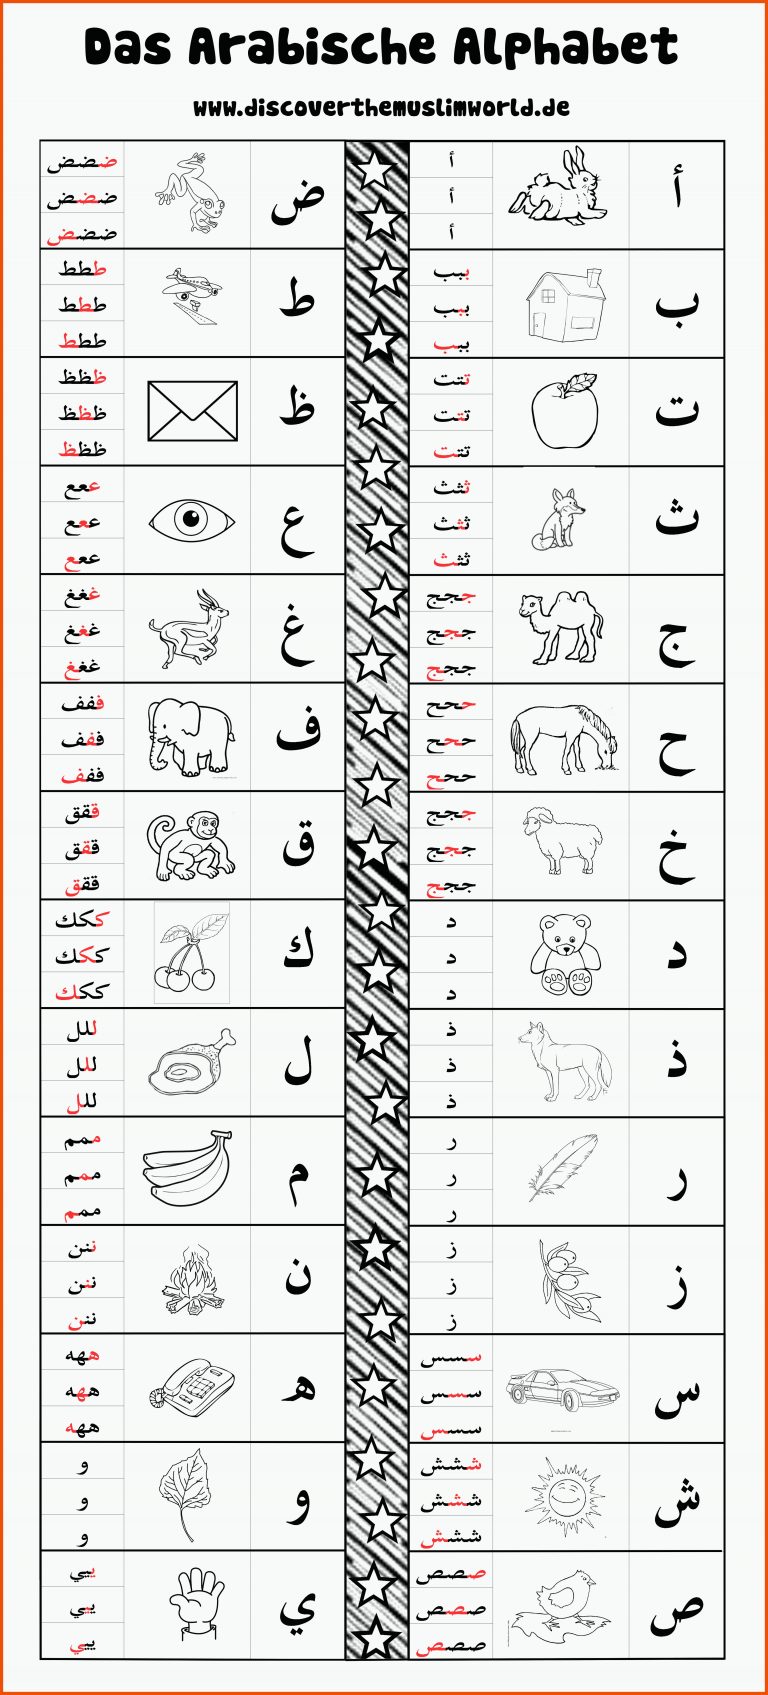 Arabic alphabet_BW_GER | Arabisches alphabet, Arabisches alphabet ... für arabisch lernen arbeitsblätter